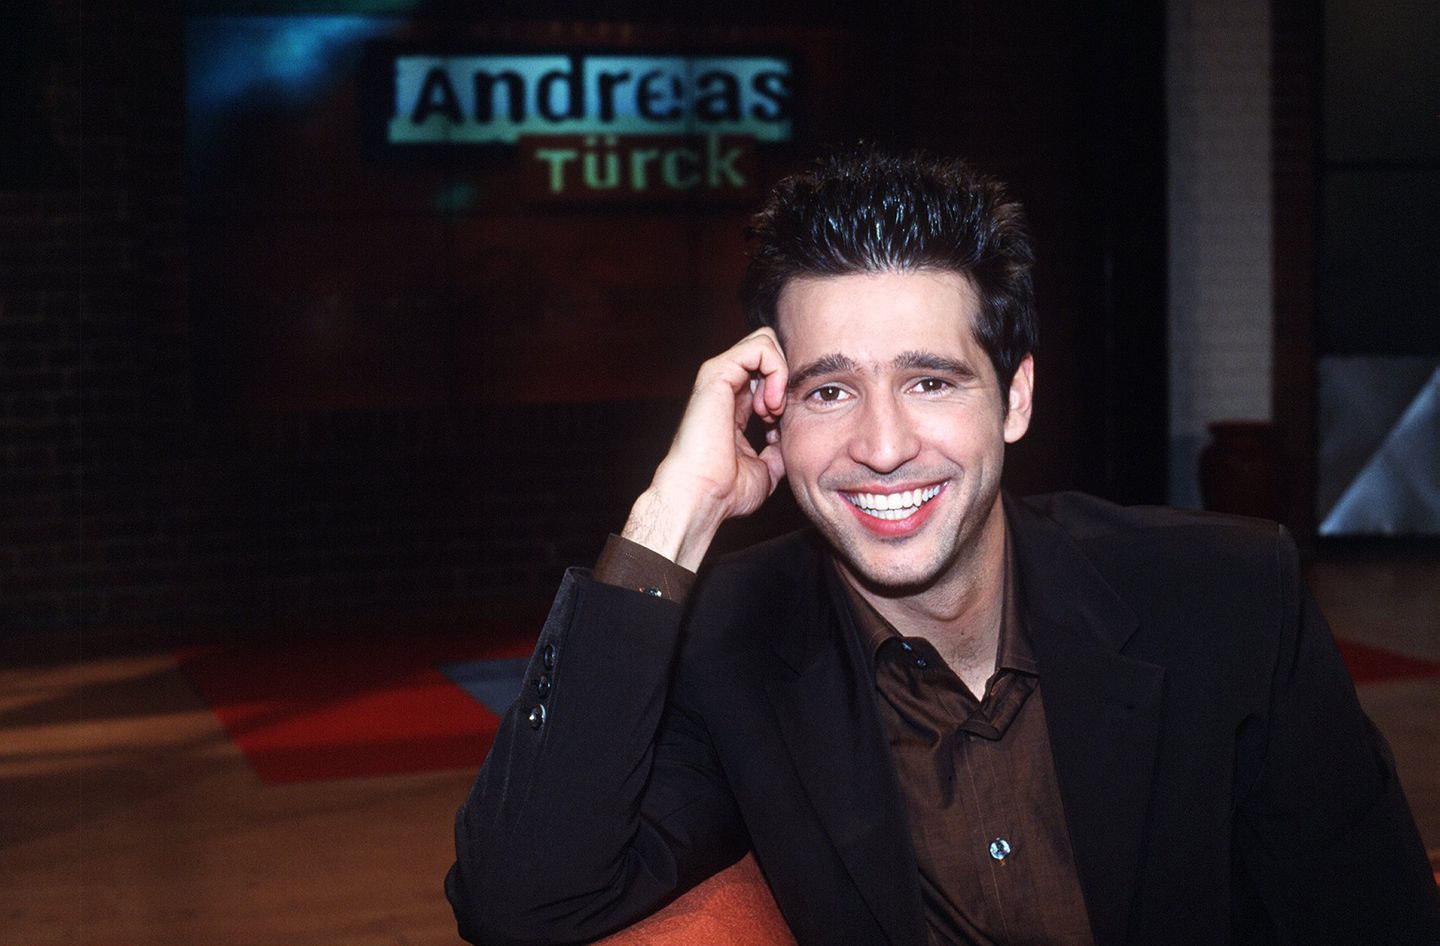 Ab dem Jahr 1998 gesellte sich Andreas Türck in die Riege der beliebten Talkmaster. Bis 2002 moderierte er die täglich ausgestrahlte Talkshow auf ProSieben. Nach einer Anzeige wegen Vergewaltigung, 2004, musste er vor Gericht. Türk wurde freigesprochen, zog sich aber gebrandmarkt aus der Öffentlichkeit zurück. 